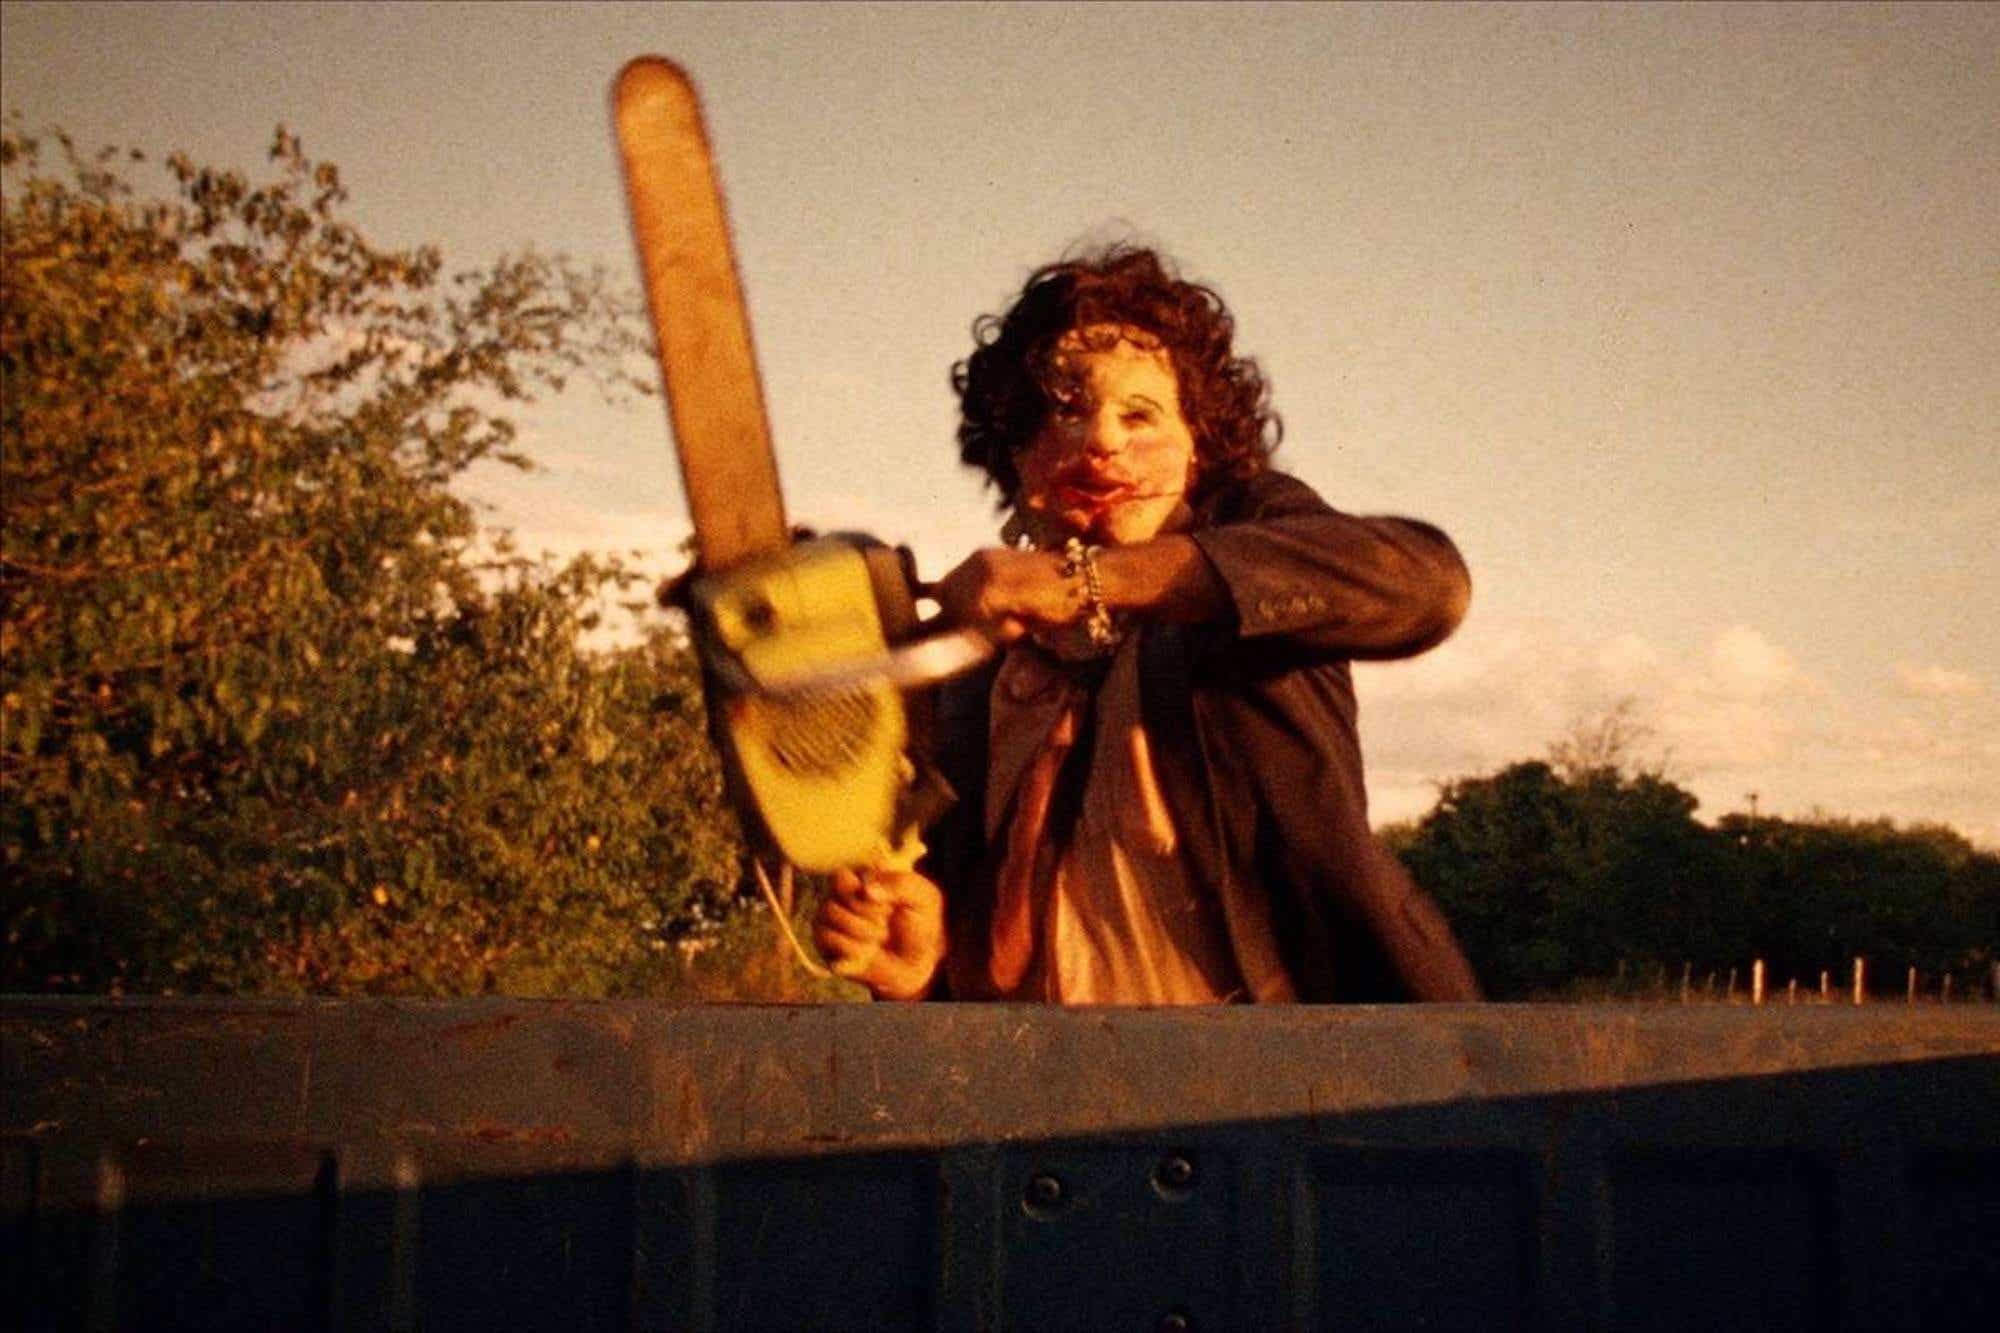 Een scène uit 'The Texas Chainsaw Massacre'.